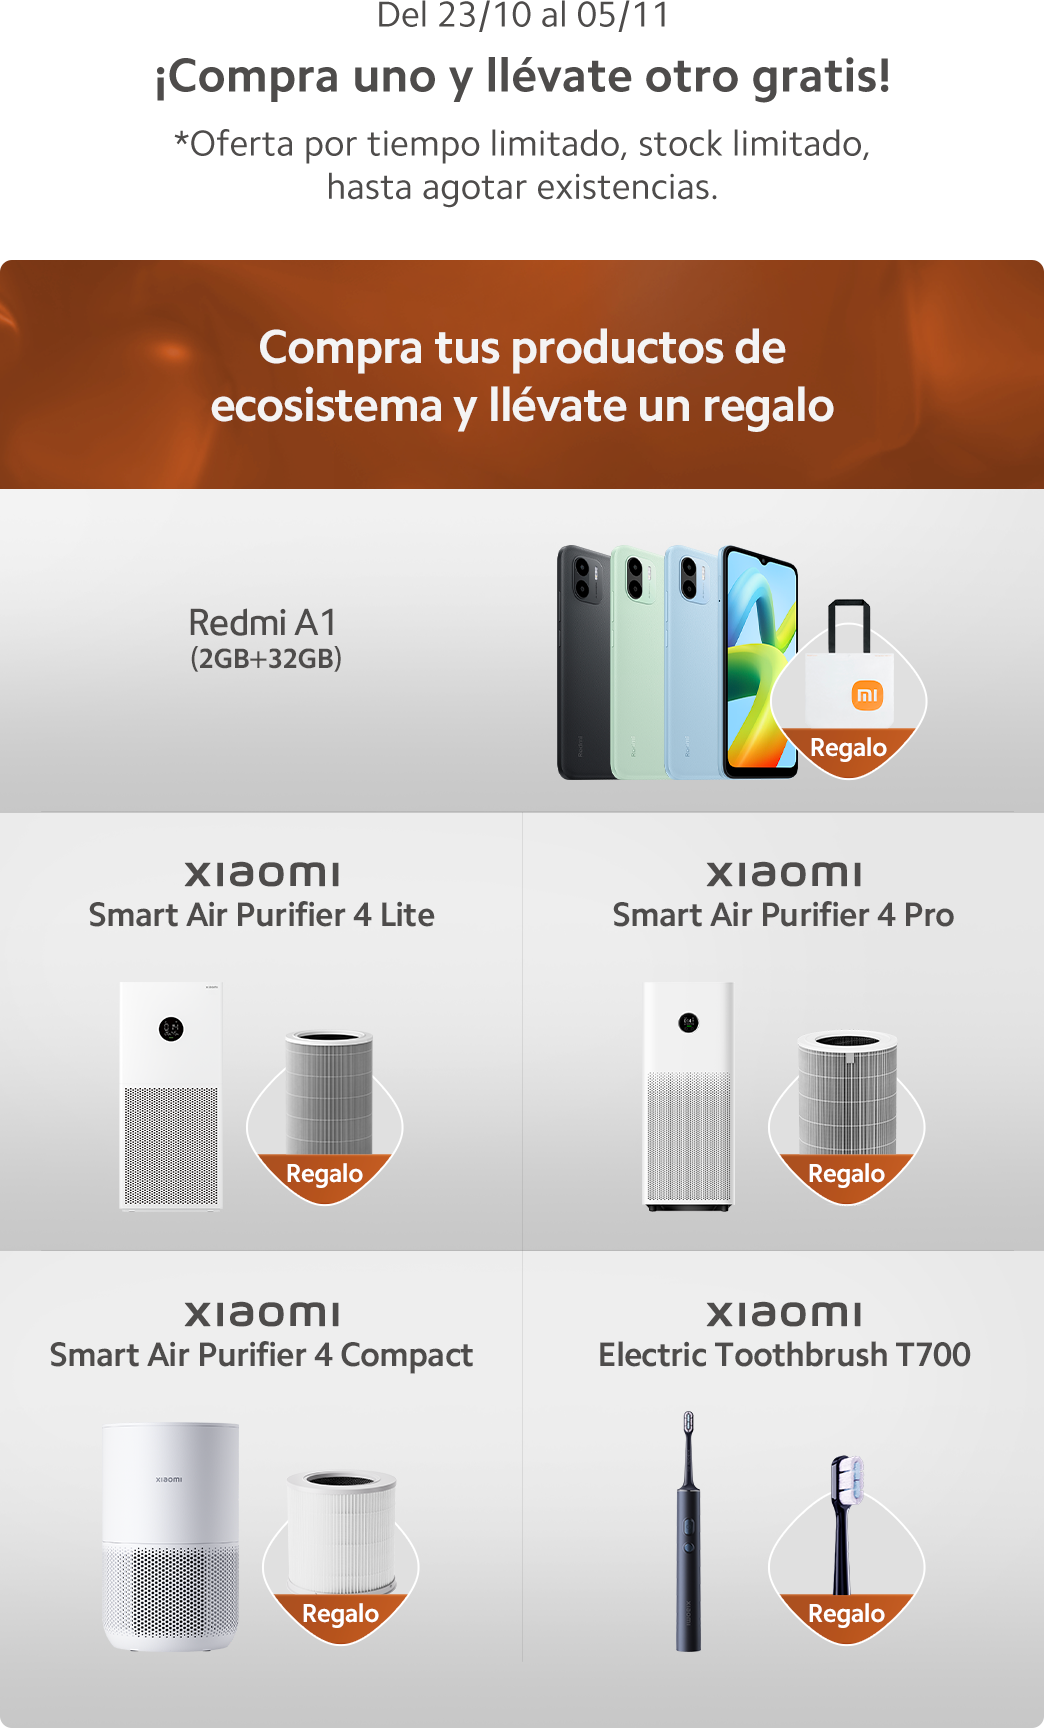 Xiaomi pone a la venta una navaja suiza que incluye hasta un clip para  extraer tarjetas SIM - Noticias Xiaomi - XIAOMIADICTOS